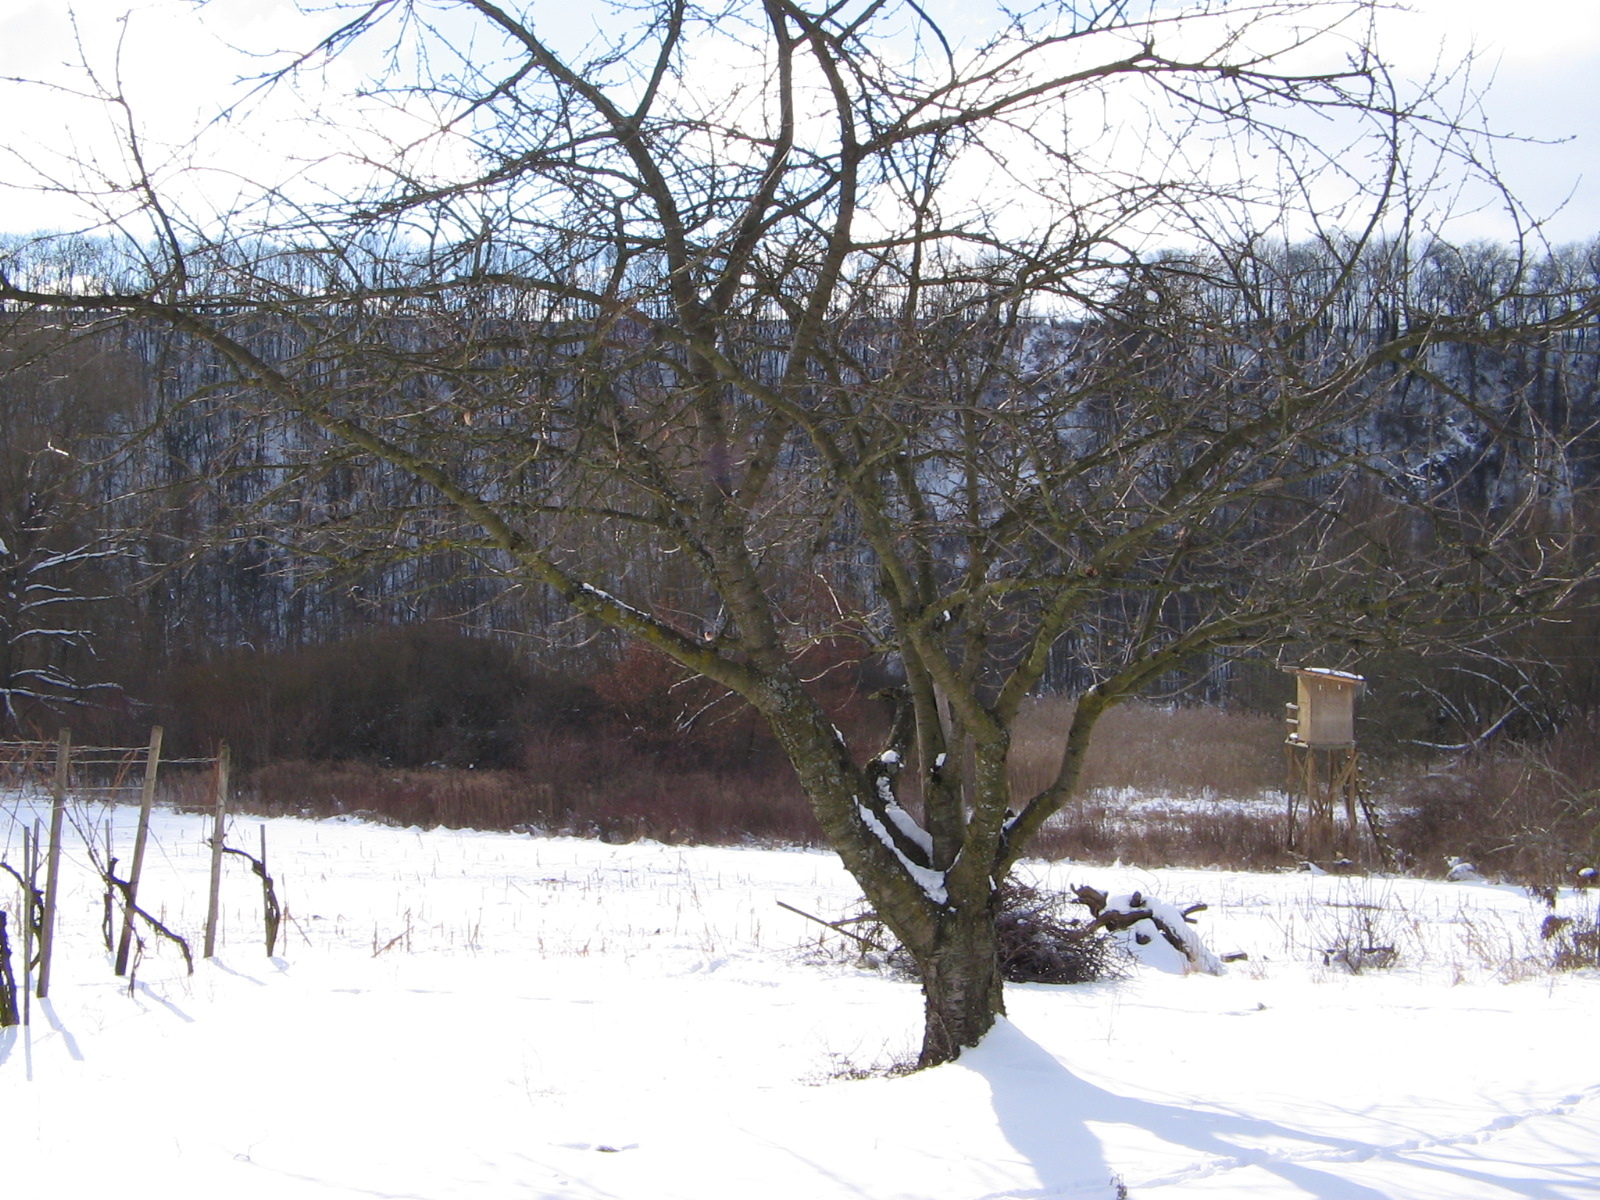 27.02.2005 - Baum im Schnee - Alte Neckarschlinge bei Lauffen am Neckar